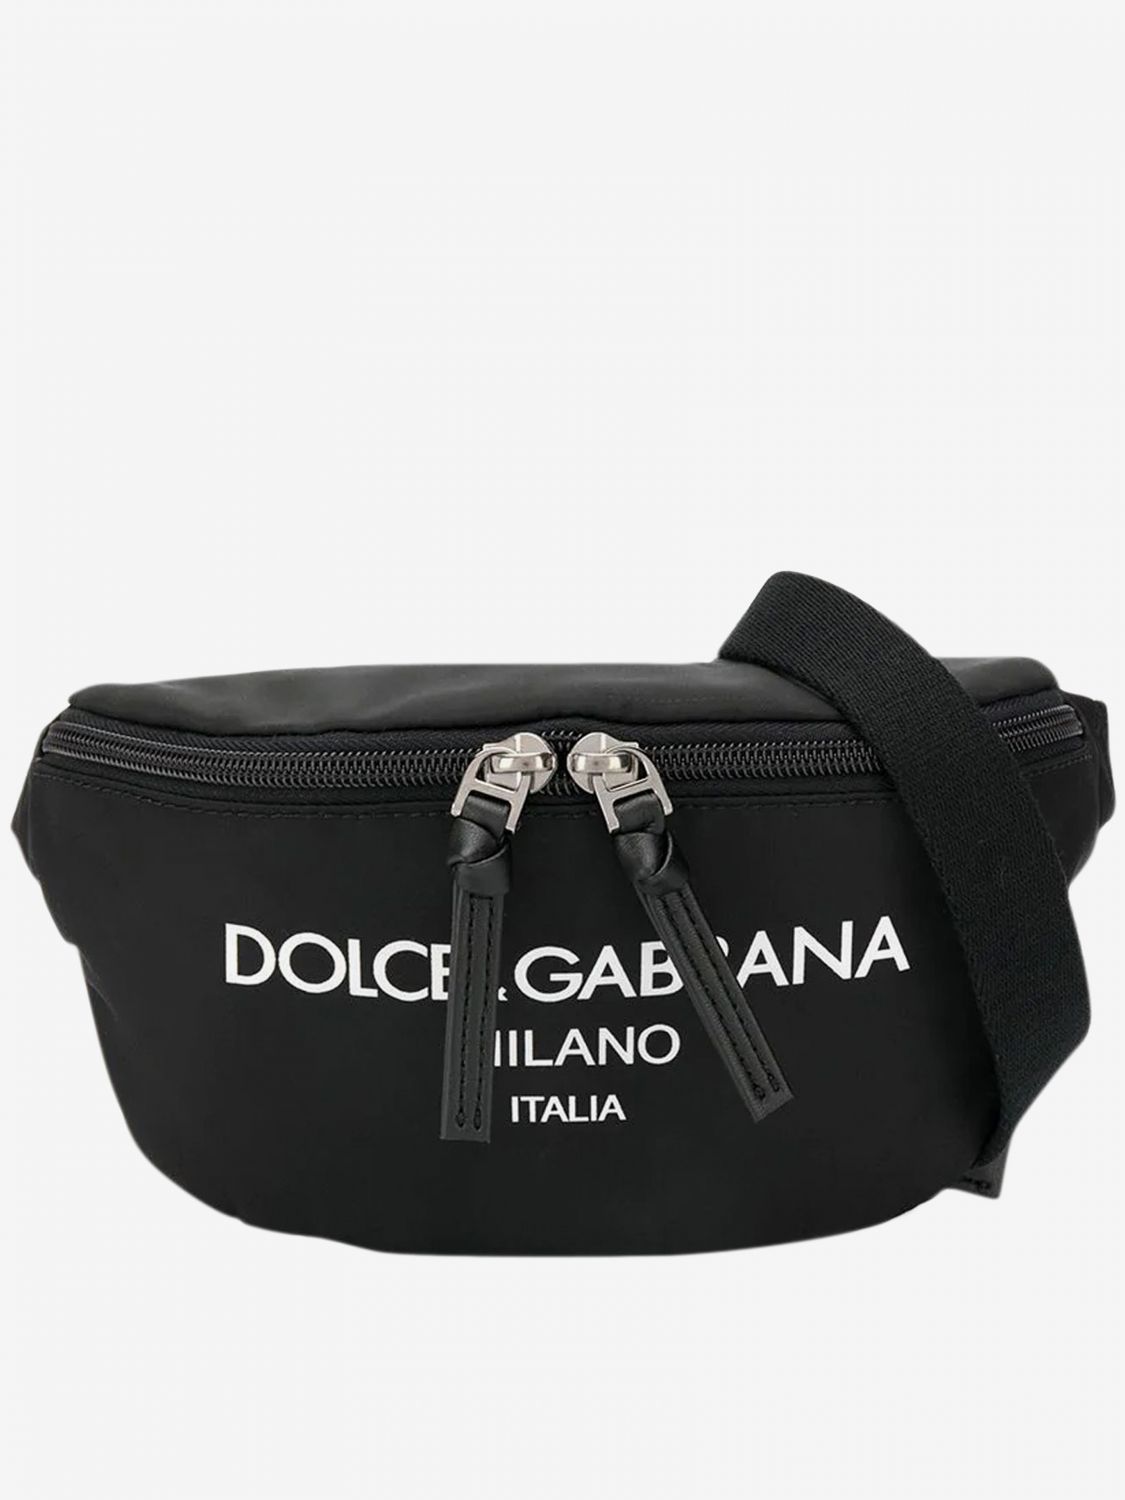 Dolce & Gabbana Outlet: nylon belt bag with logo - Black | Bag Dolce ...